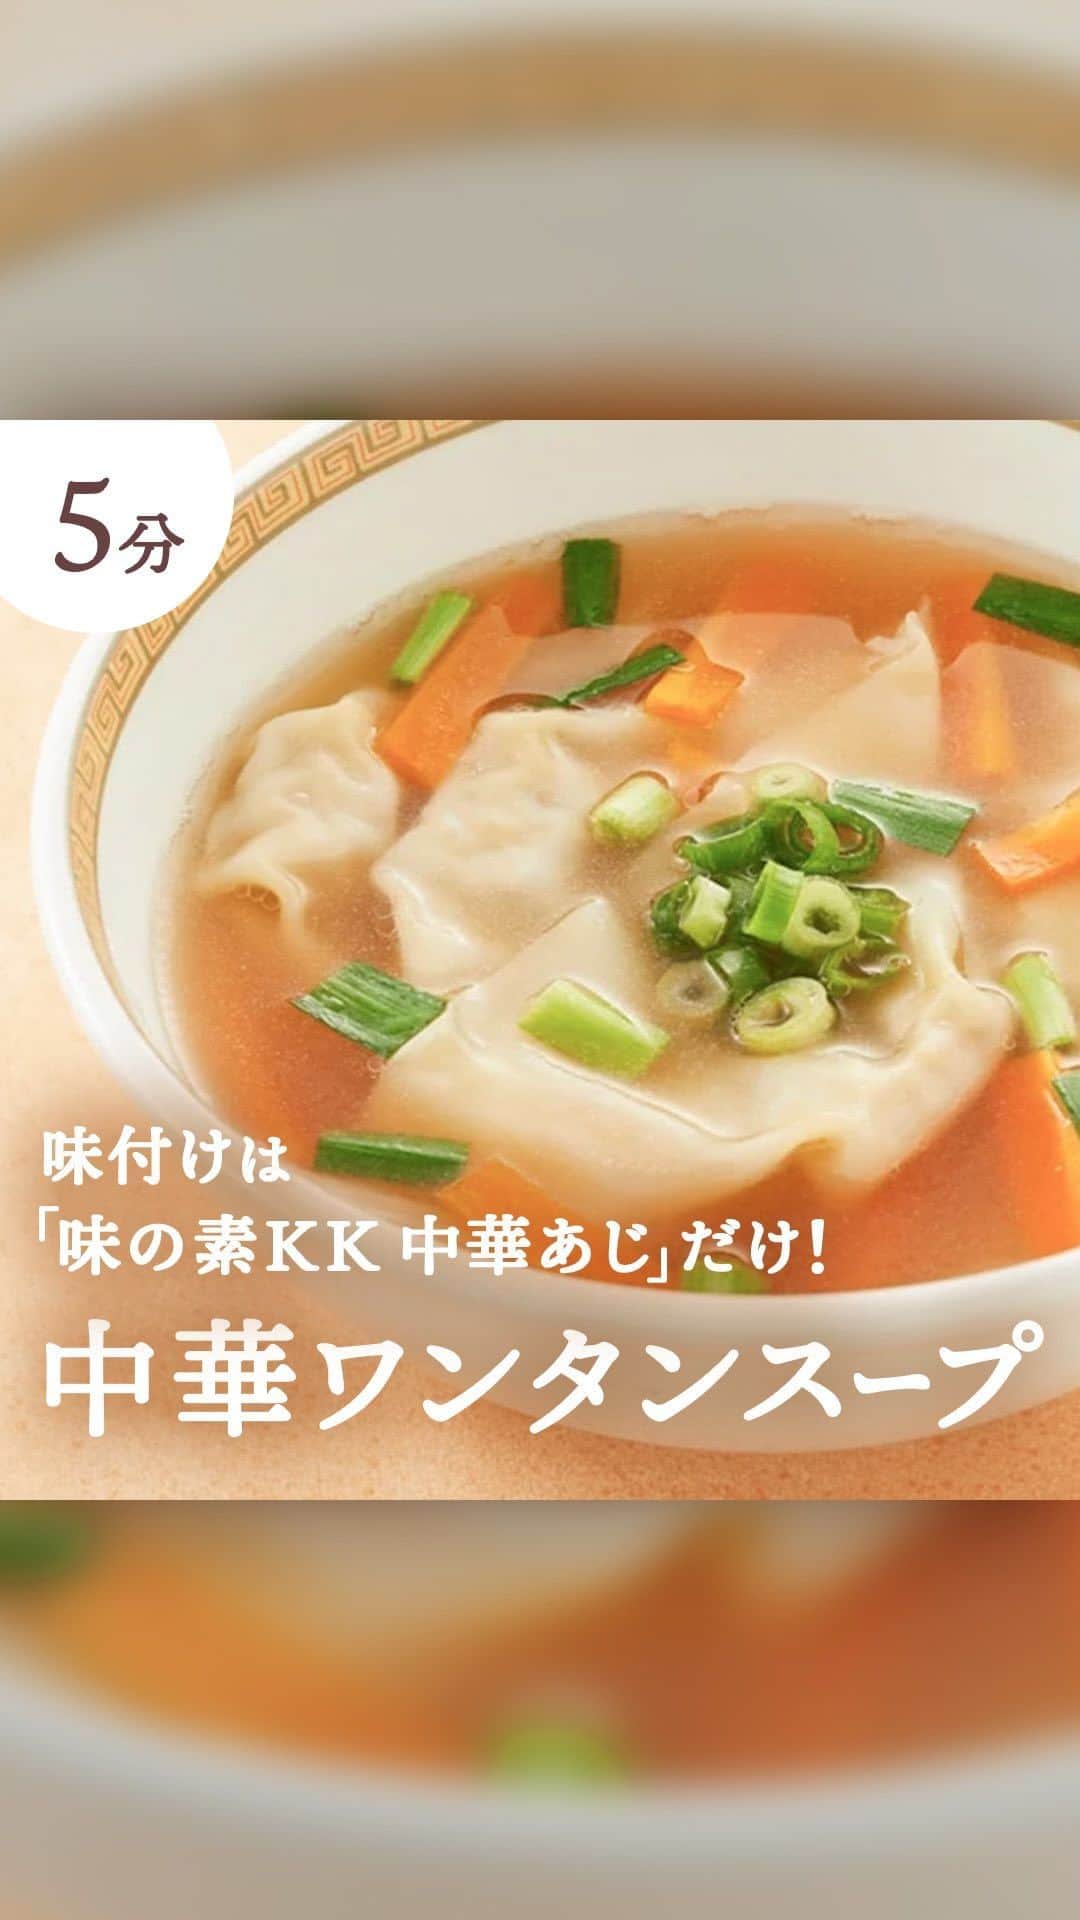 cooking_ajinomotoのインスタグラム：「【動画🎥でご紹介！】 作ってみたいと思ったらコメント欄に【♡】で教えてくださいね！ みなさまはどんなレシピを知りたいですか？ぜひコメントで教えてください♪  ✓中華ワンタンスープ【⏱5分】  5分で完成！ツルンとした食感がクセになるワンタンスープ🥣  味付けは「味の素KK 中華あじ」だけ。 献立の1品にはもちろん、小腹がすいたときにもピッタリです😋  ******** ◆材料（4人分） ワンタン・肉入り　8個 にんじん　1/4本（40g） にら　1/2束（50g） 水　3カップ 「味の素KK中華あじ」　大さじ1 小ねぎの小口切り　適量  ◆つくり方 ⑴ にんじんは短冊切りにして、にらはザク切りにする。 ⑵ 鍋にＡを入れて火にかけ、沸騰したら、⑴のにんじん・にら、ワンタンを加えてひと煮立ちさせる。 ⑶ 器に盛り、小ねぎを散らす。  ******** 「AJINOMOTO PARK」のサイトでは、他にも参考になる絶品レシピがたくさん🌟 気になる方は、ぜひプロフィールのURLからサイトをCHECKしてください👀☆  #ajinomotopark #味の素パークレシピ #味の素パーク #簡単レシピ #時短レシピ #5分レシピ #料理動画 #レシピ動画 #スープ #スープレシピ #中華スープ #中華スープレシピ #おかずスープ #具沢山スープ #具だくさんスープ #食べるスープ #ワンタン #ワンタンスープ #ワンタンレシピ #中華料理 #夜食 #夜食レシピ #中華あじ #おいしいねは笑顔の素」